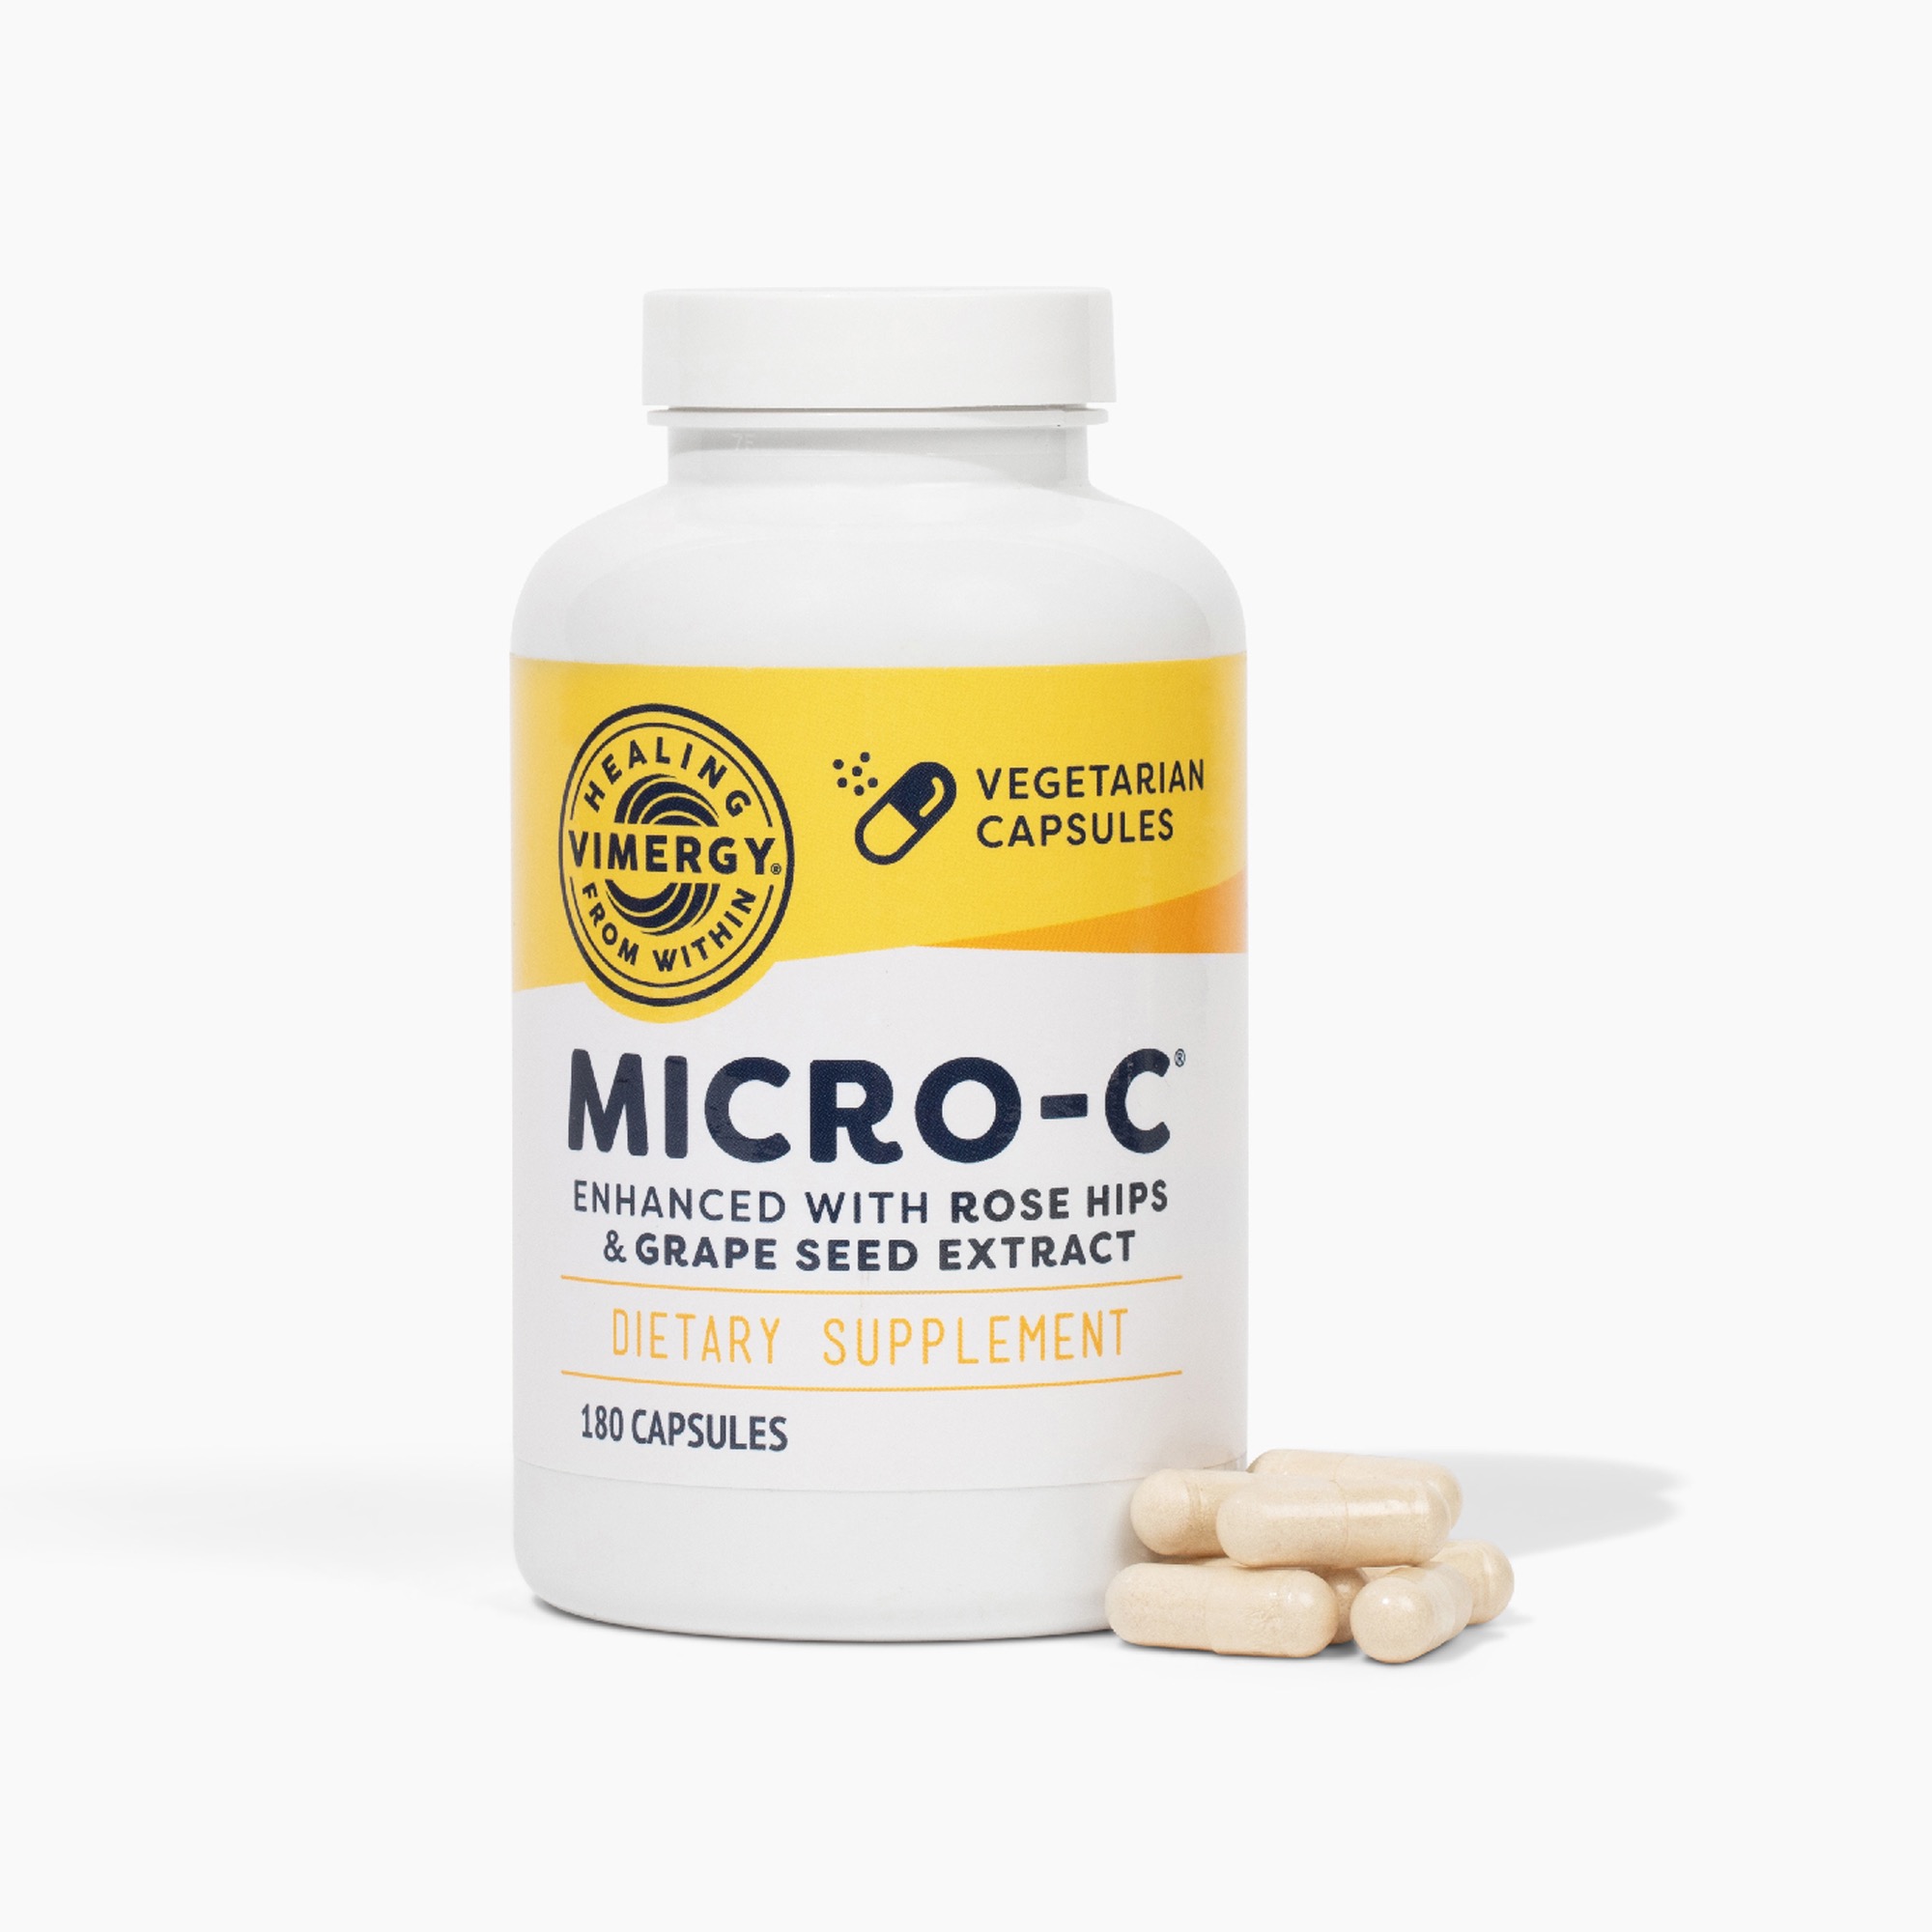 Vimergy Micro-C: gepuffertes Vitamin C mit Bioflavonoid-Komplex